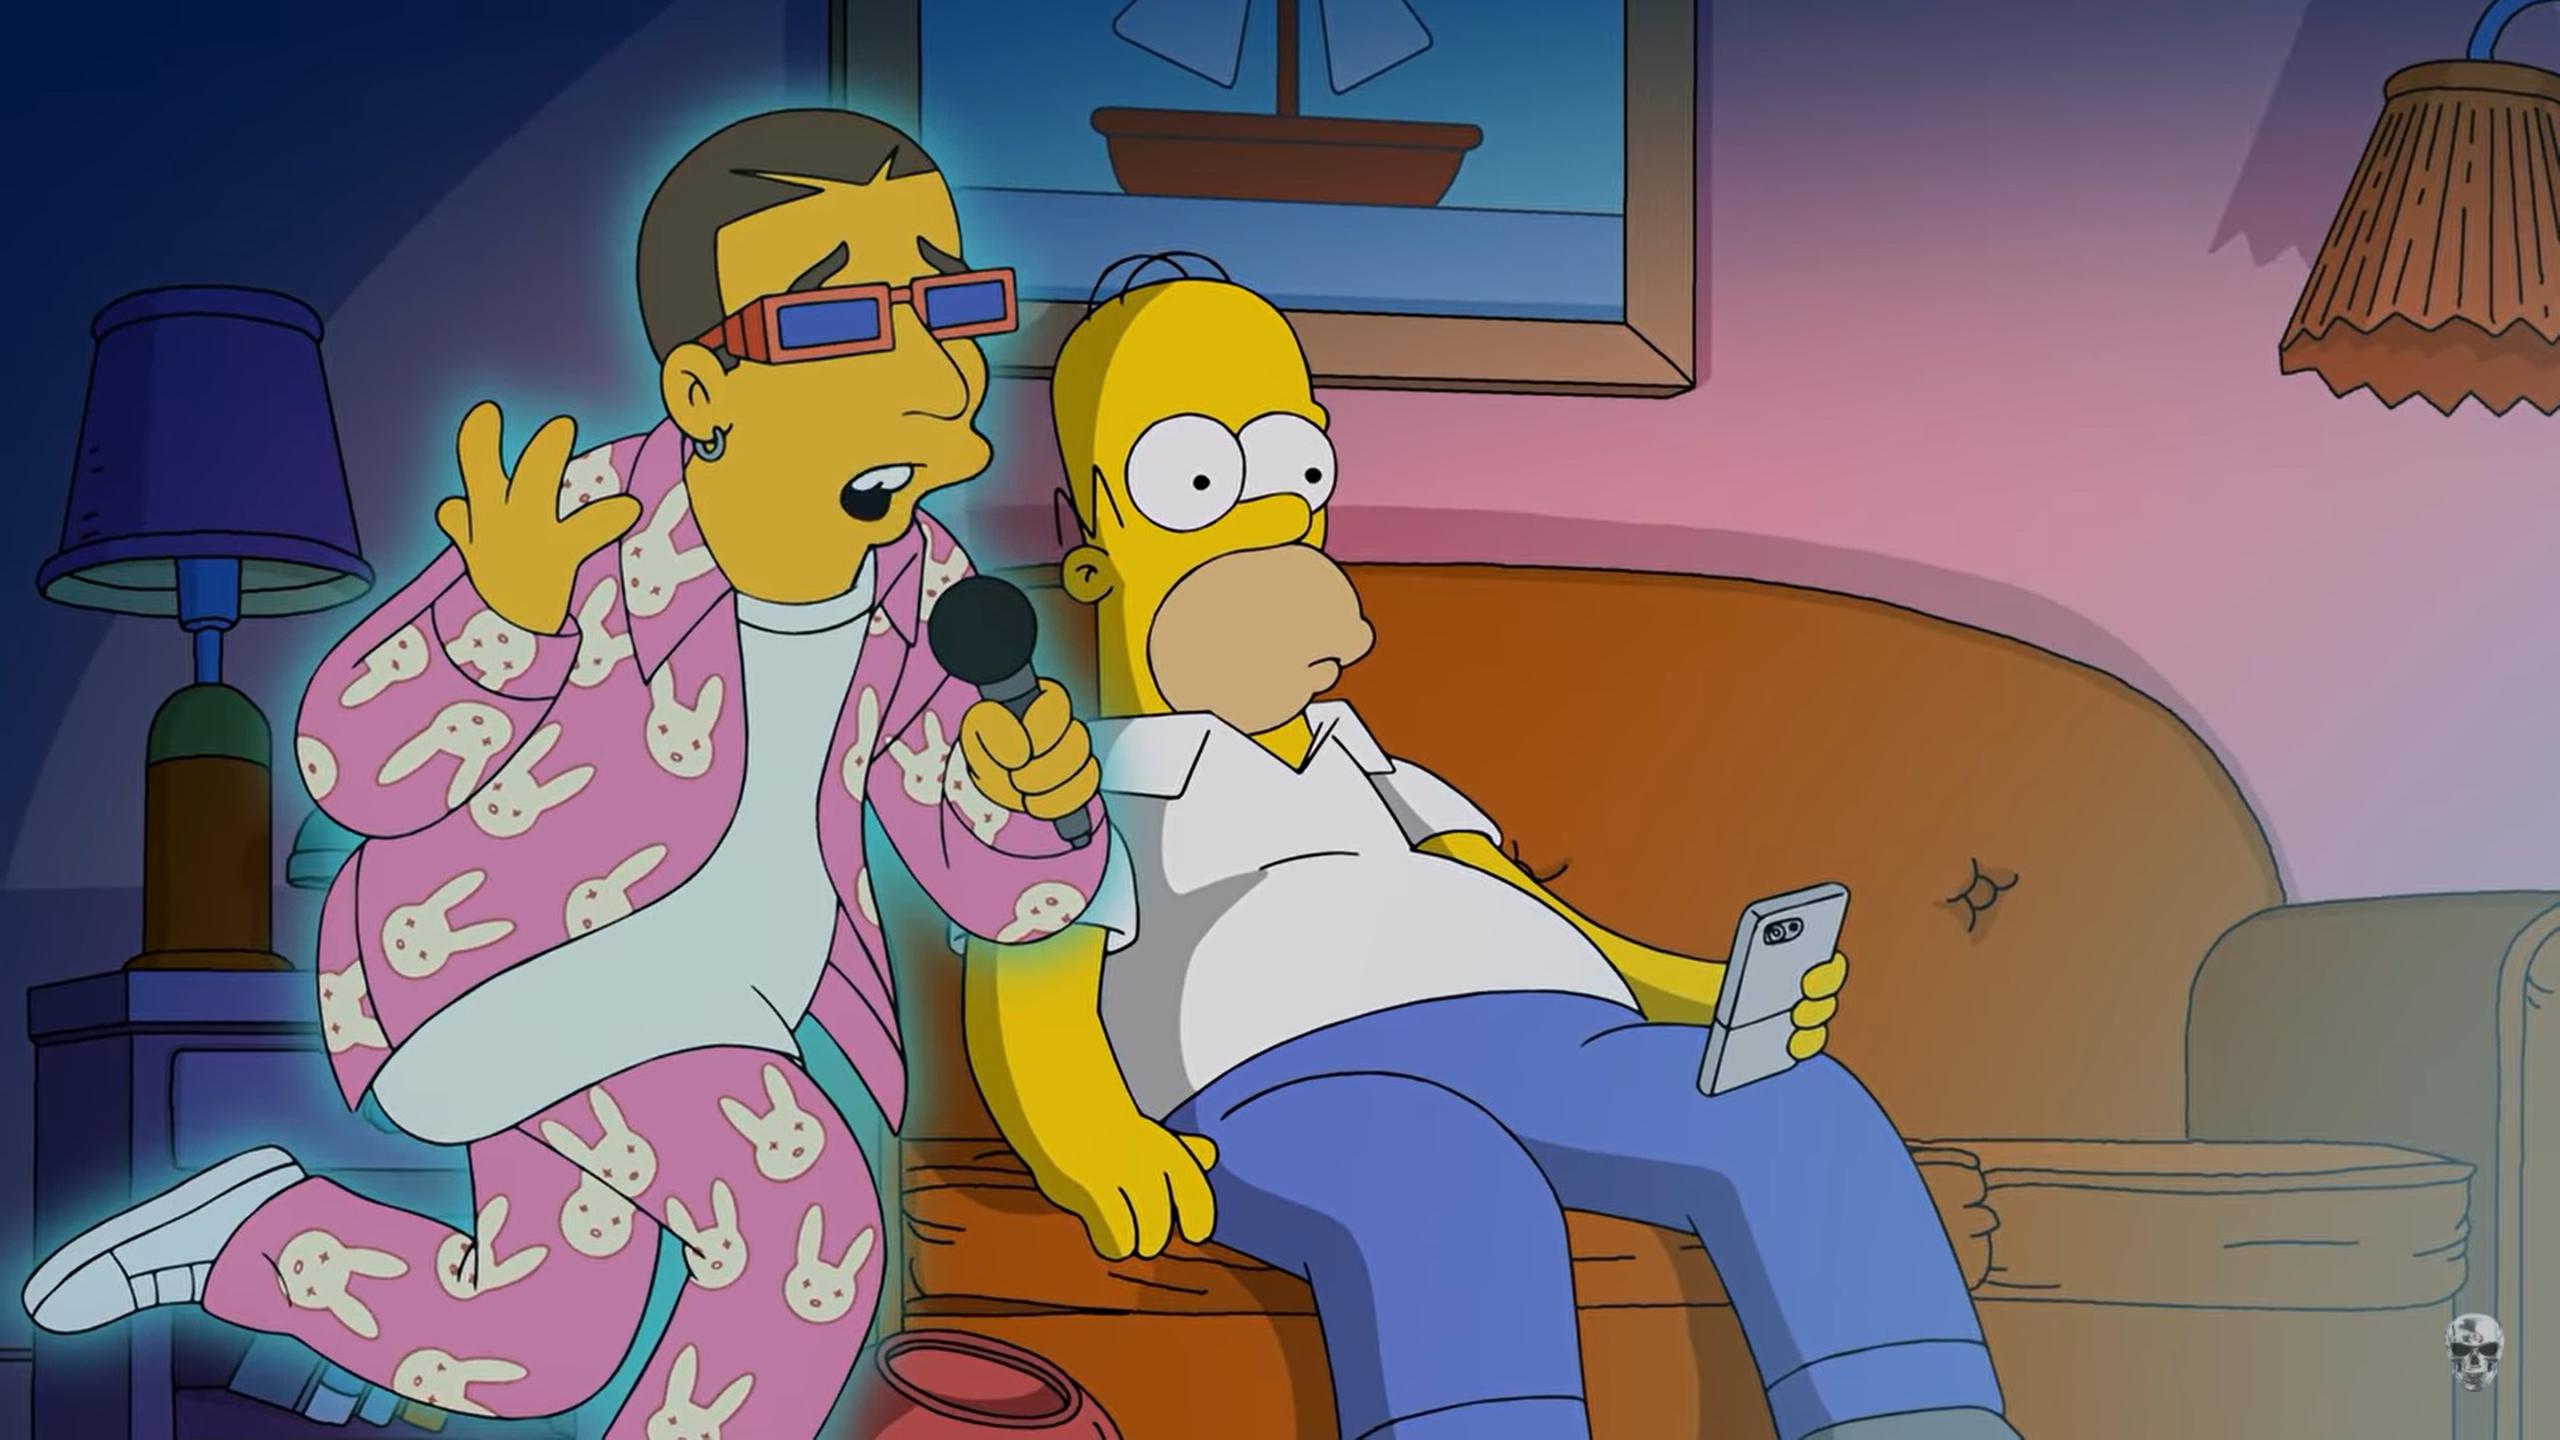 Bad Bunny reconcilia a Homero y Marge de “Los Simpson” en “Te deseo lo  mejor” - Primera Hora